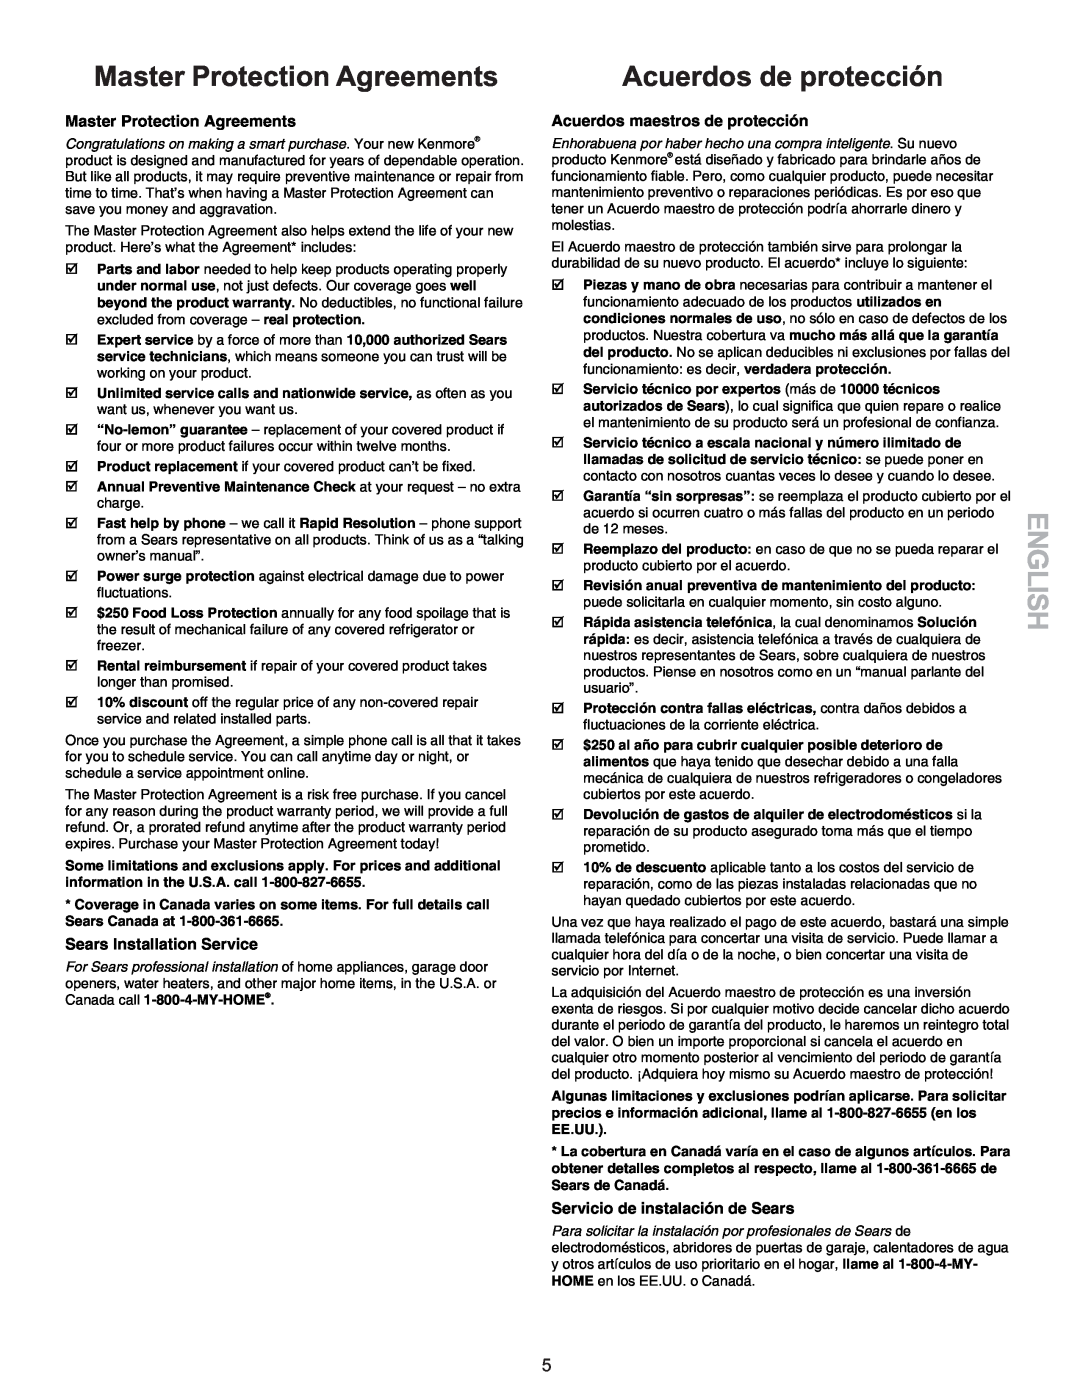 Kenmore 790-9663 manual Master Protection Agreements, Acuerdos de protección, English, Sears Installation Service 